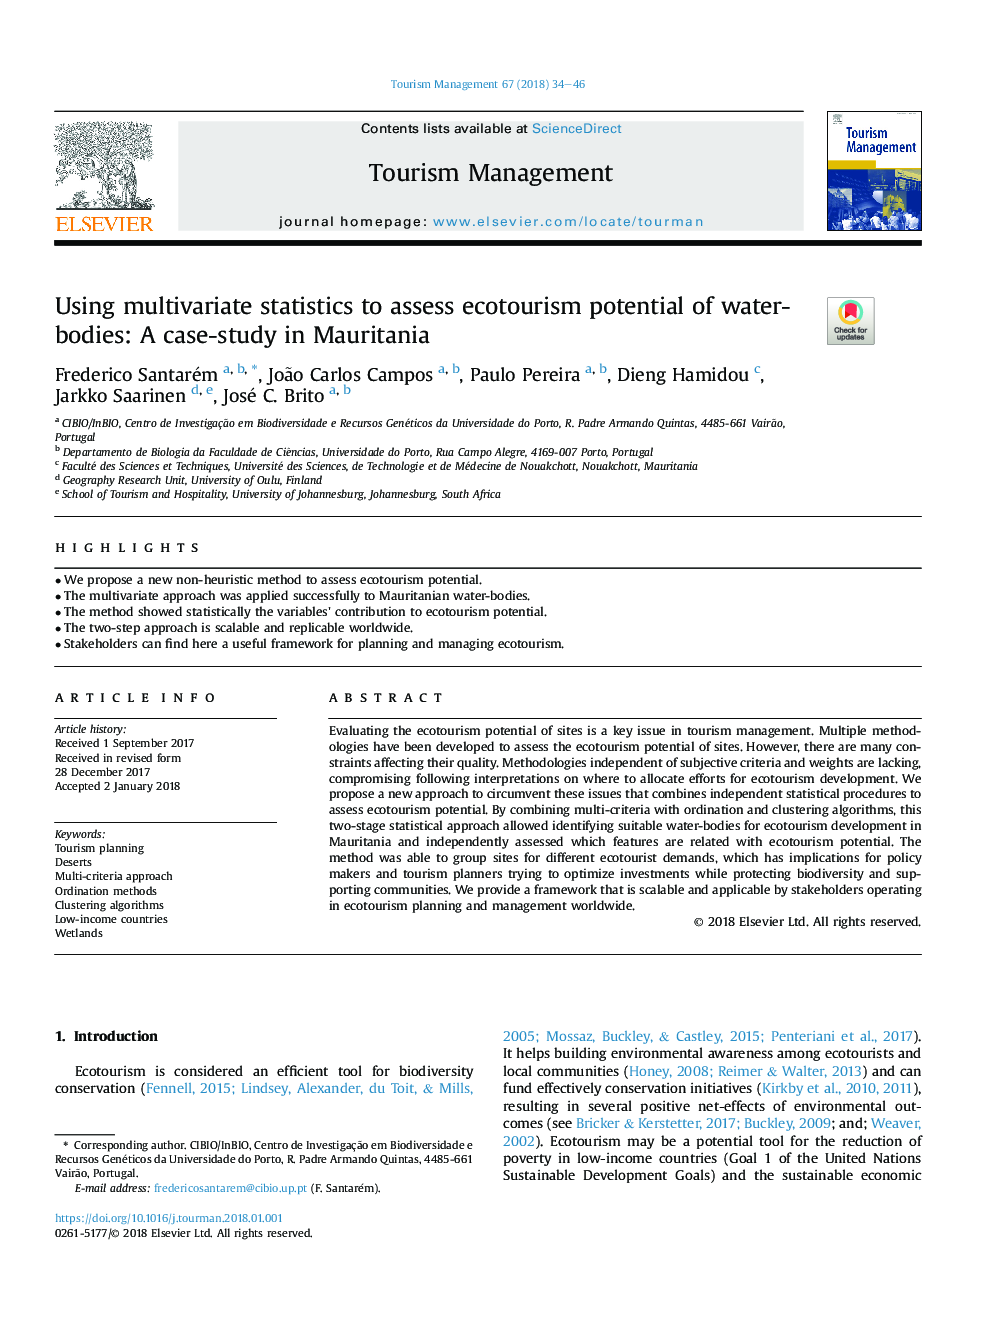 با استفاده از آمار چند متغیره برای ارزیابی پتانسیل اکوتوریسم بدن آب: مطالعه موردی در موریتانی 